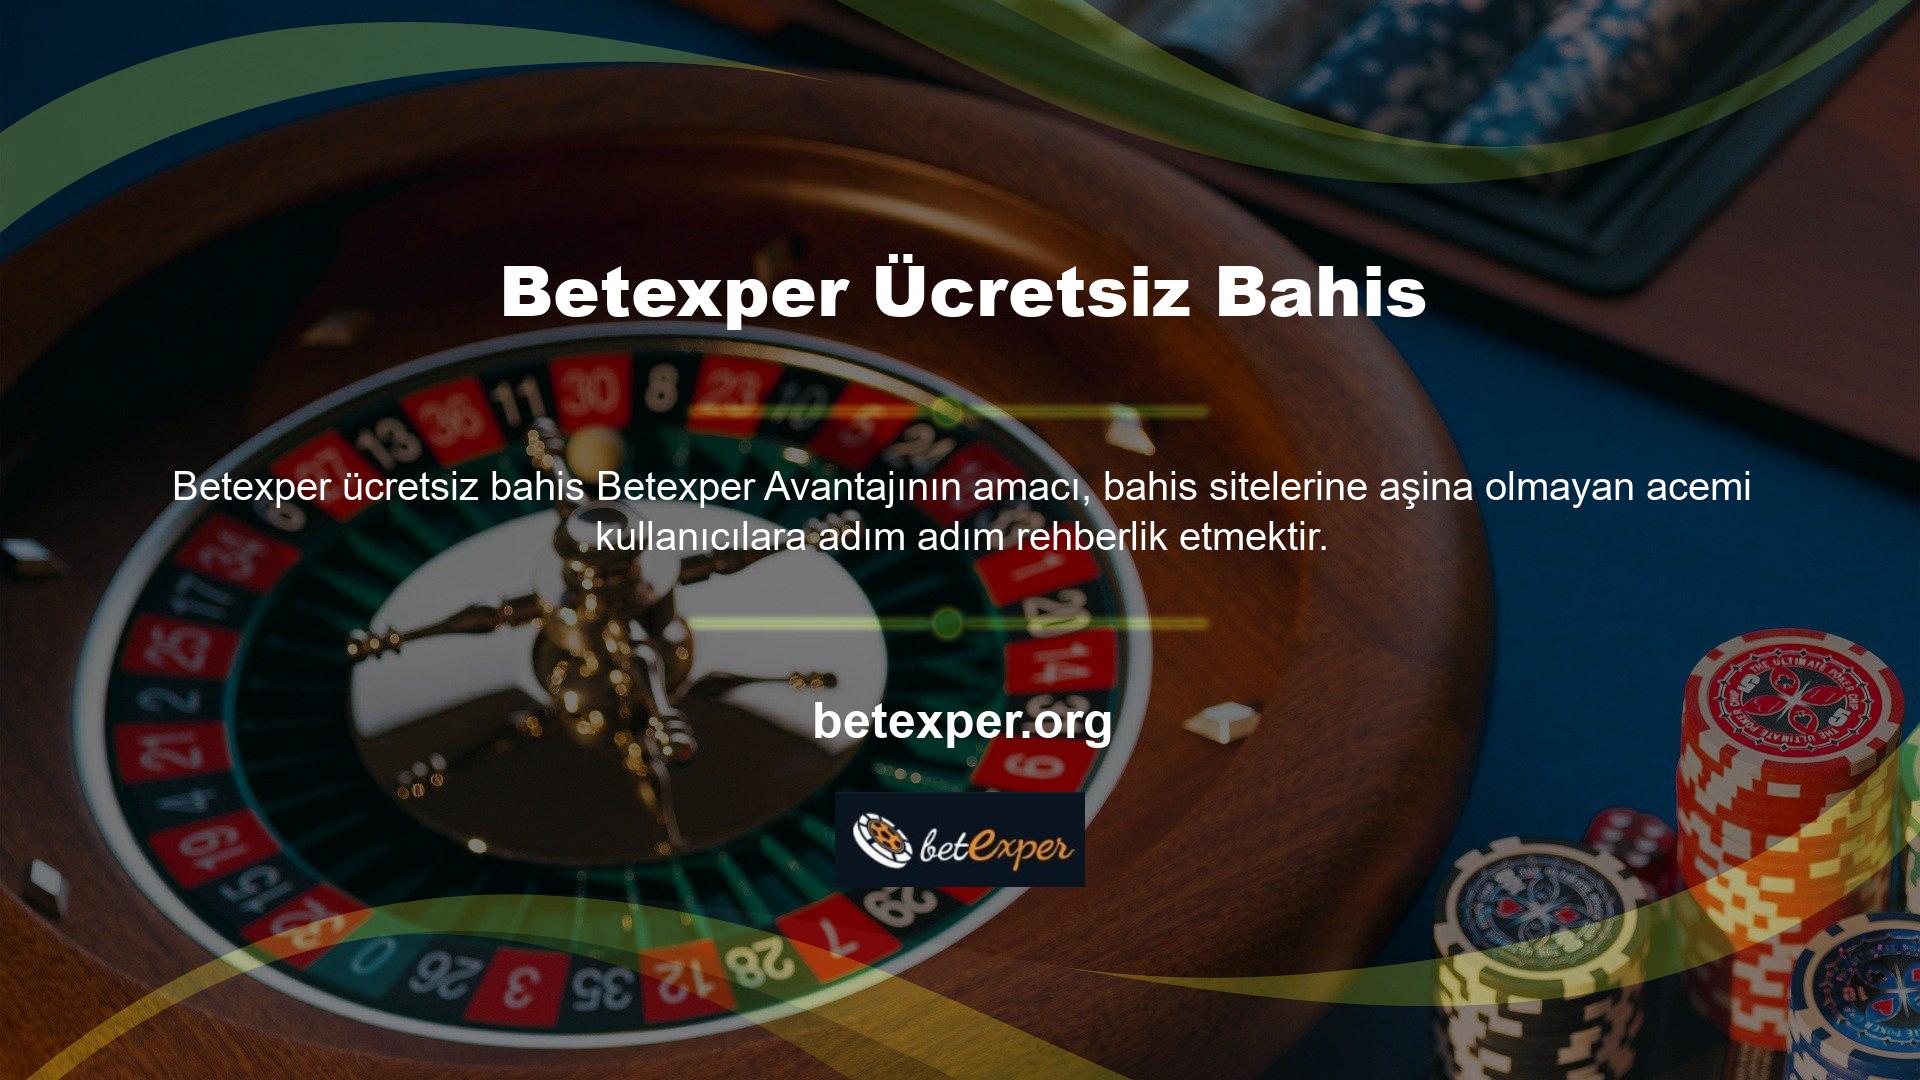 Betexper Web Sitesi, Ücretsiz Bahis Kurallarında belirli bahis kategorilerini özetlemektedir